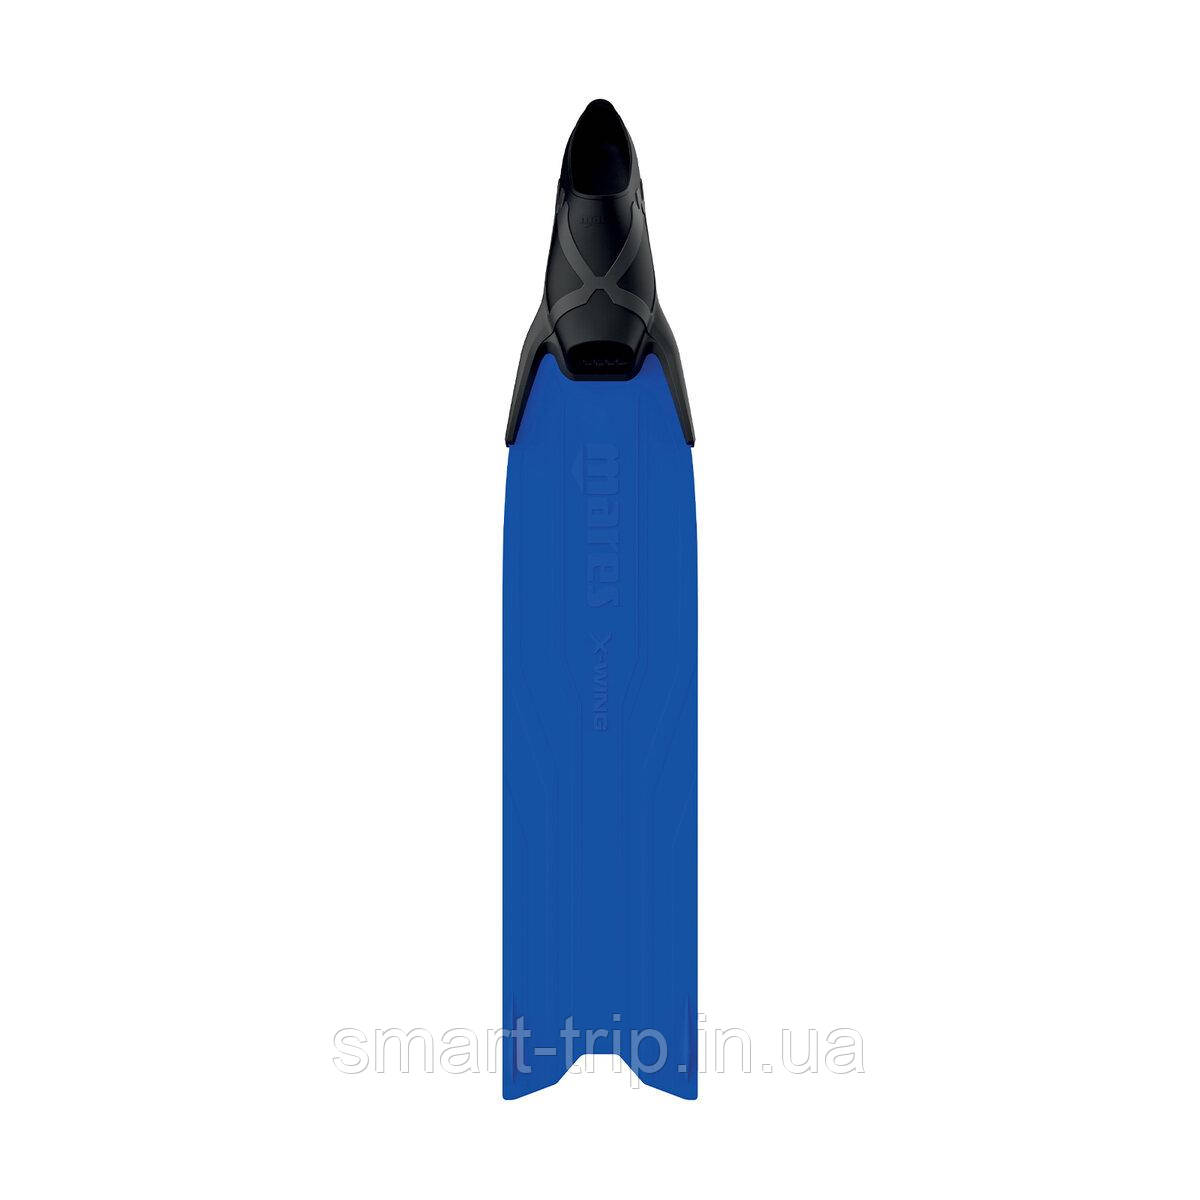 Ласти для підводного полювання Mares X-Wing сині 42/43